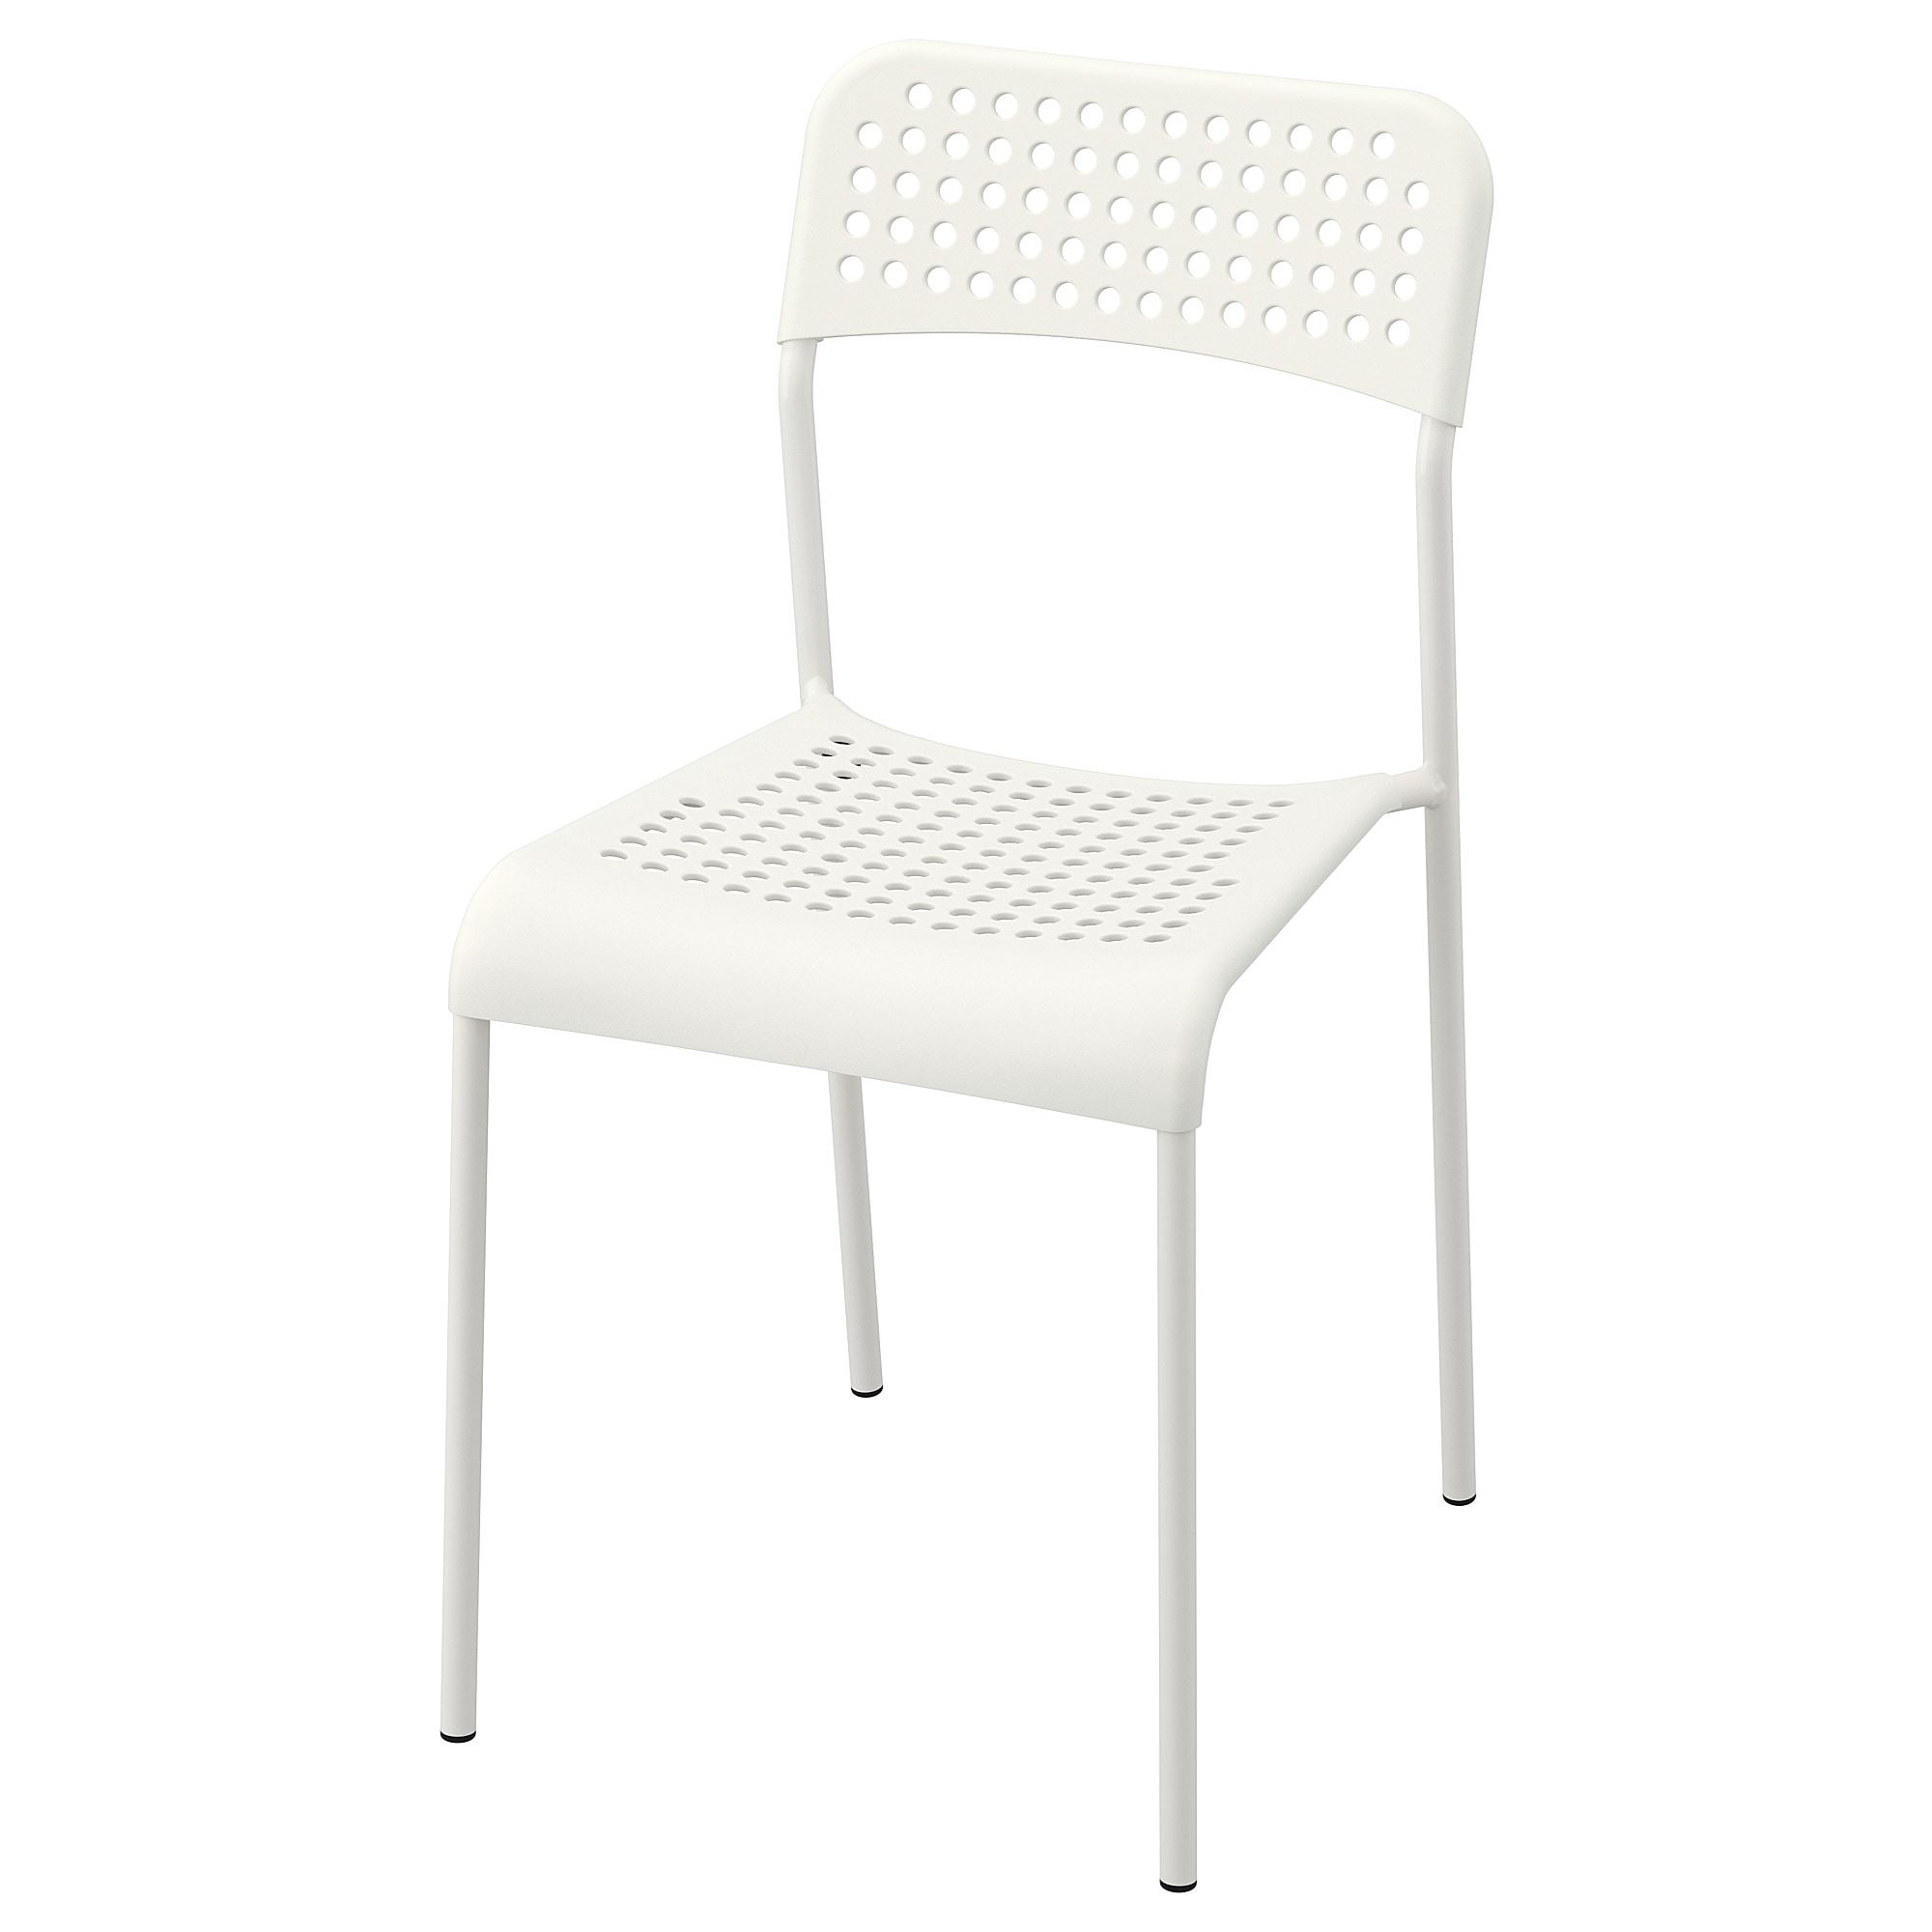 ADDE beyaz plastik sandalye